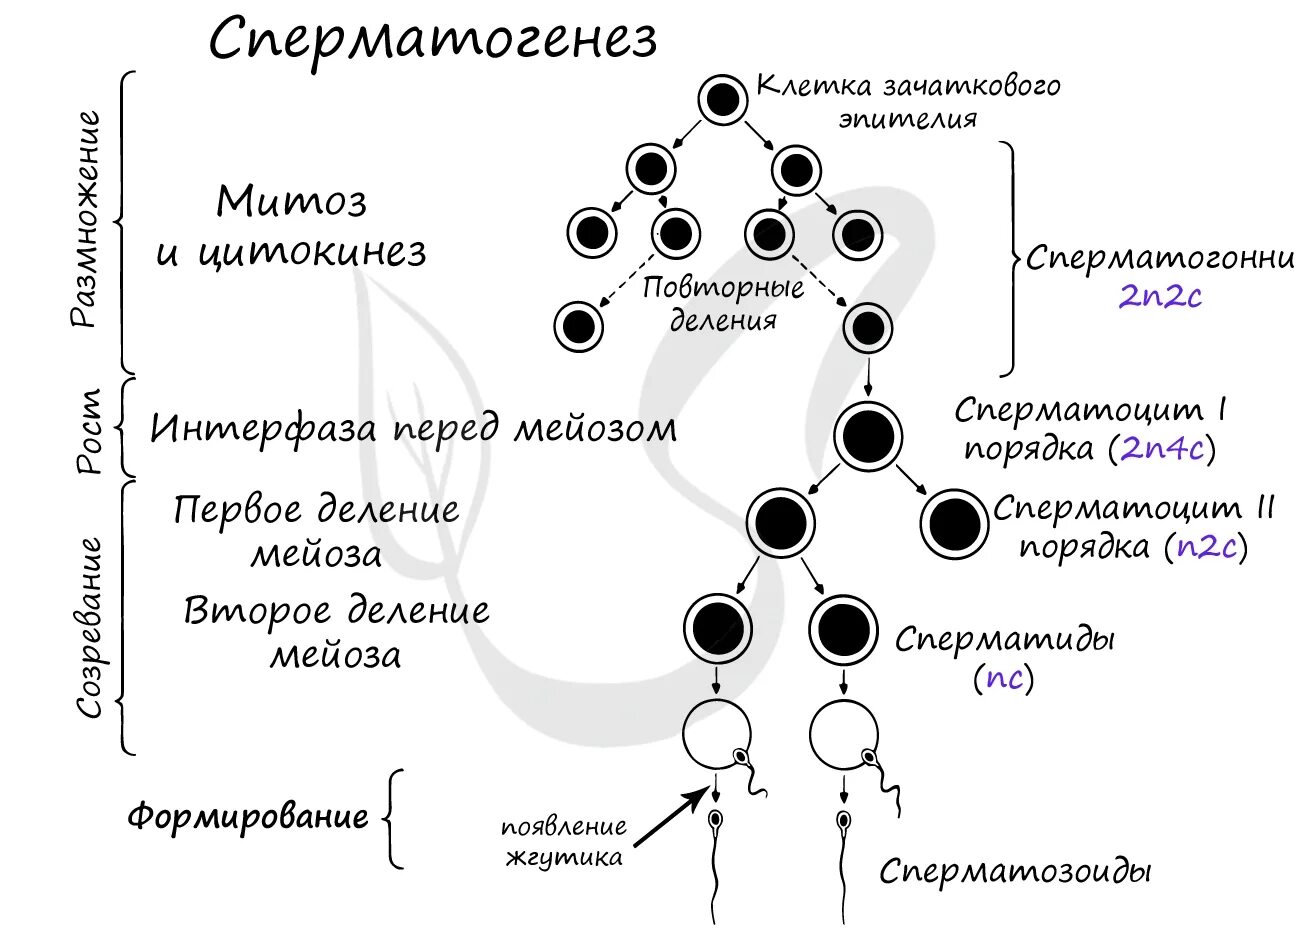 Процесс стадия сперматогенеза. 2. Гаметогенез. Сперматогенез. Фаза созревания сперматогенеза. Фаза размножения сперматогенеза. Схема процесса сперматогенеза.